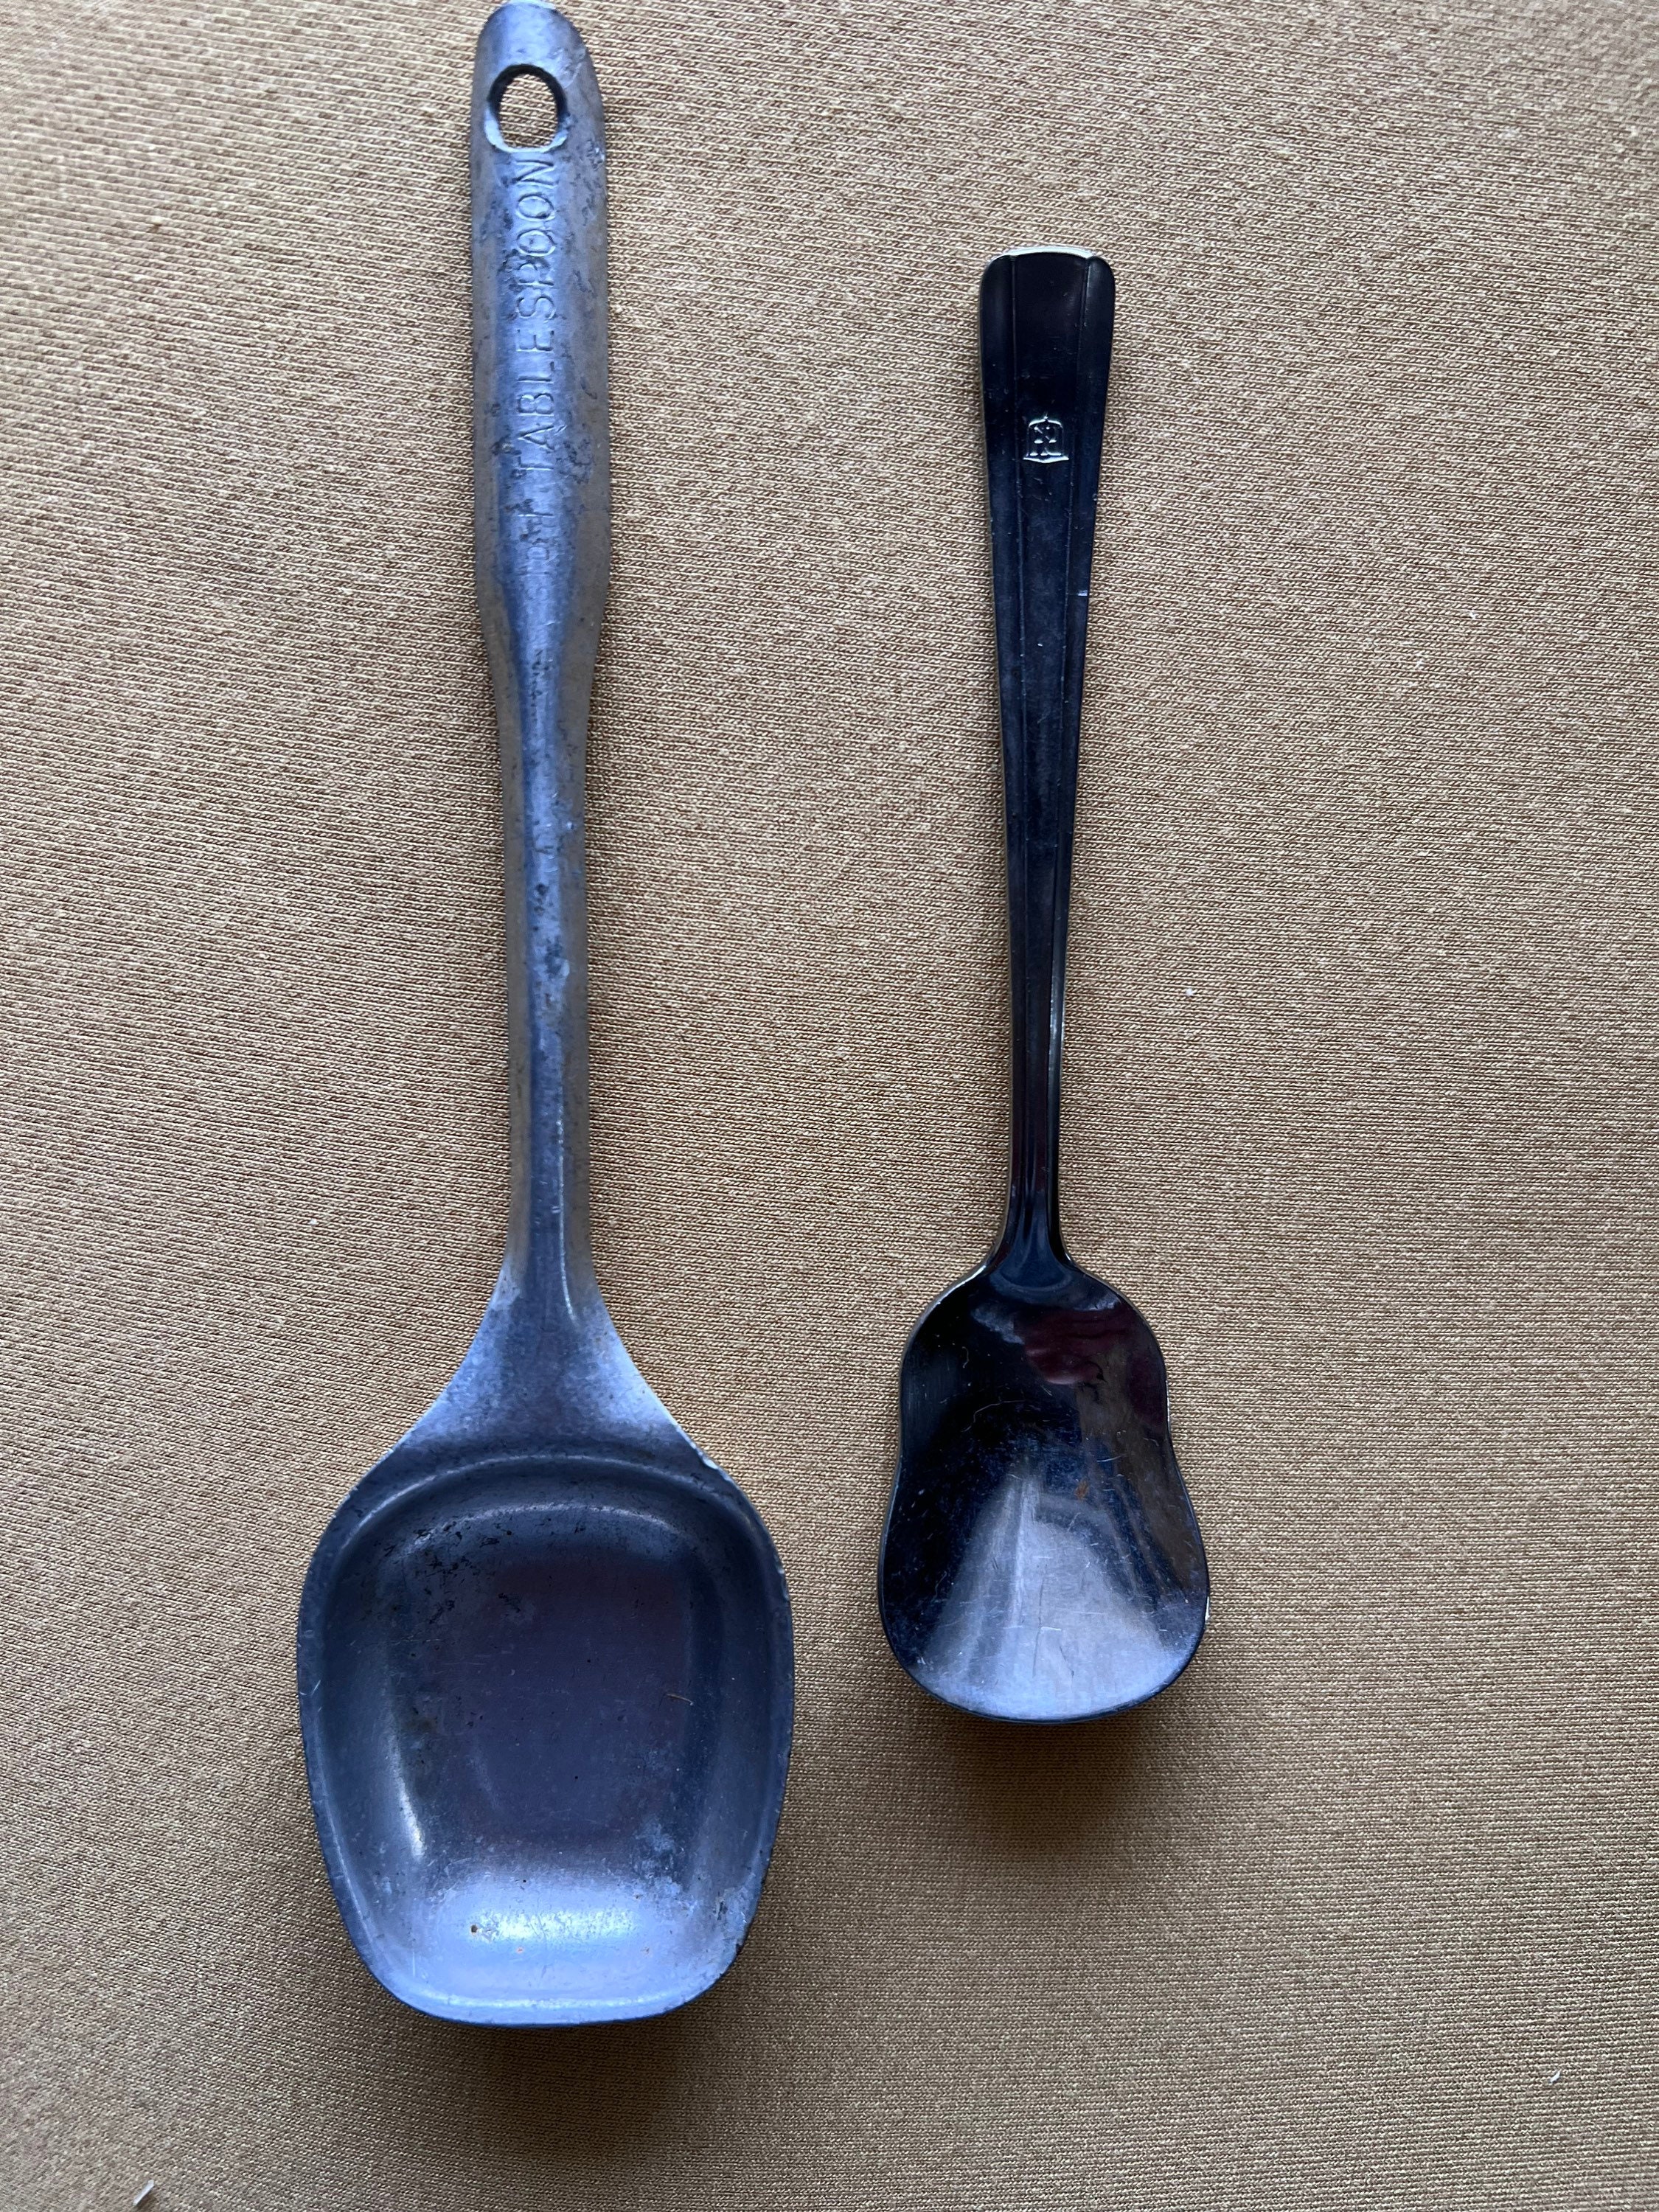 12 Melamine Corner Blending Spoon